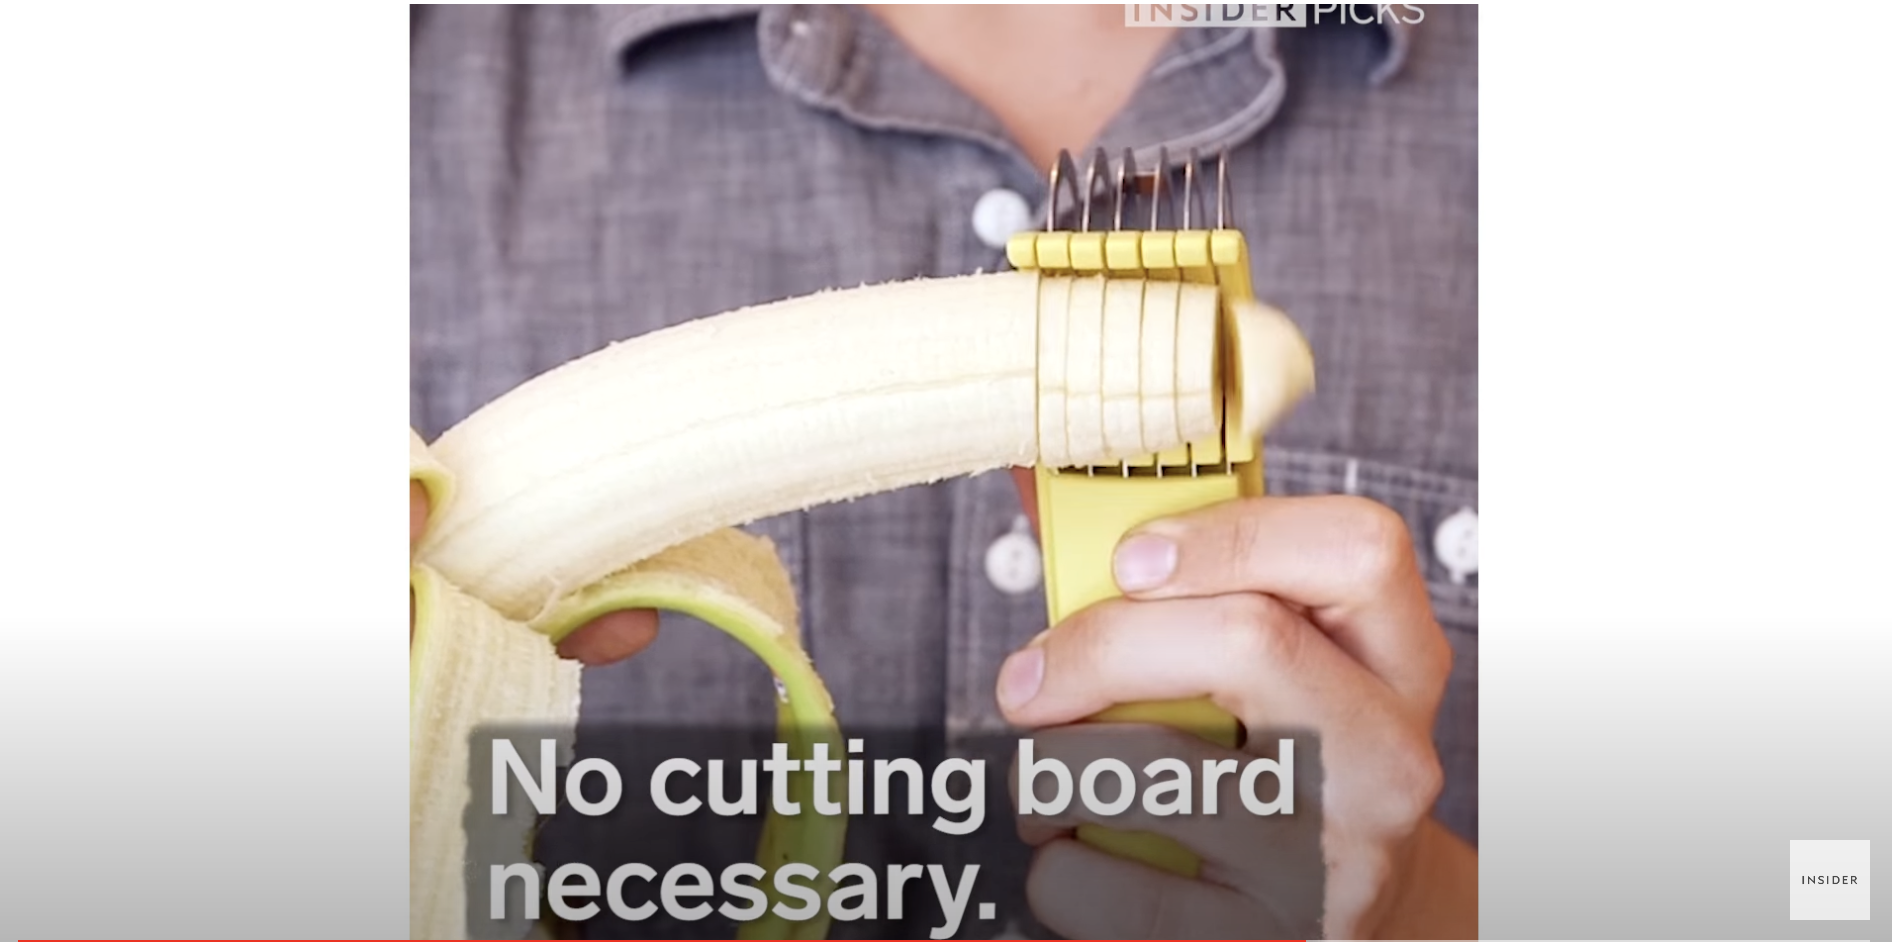 Ein Bananenschneider | Quelle: YouTube/Insider